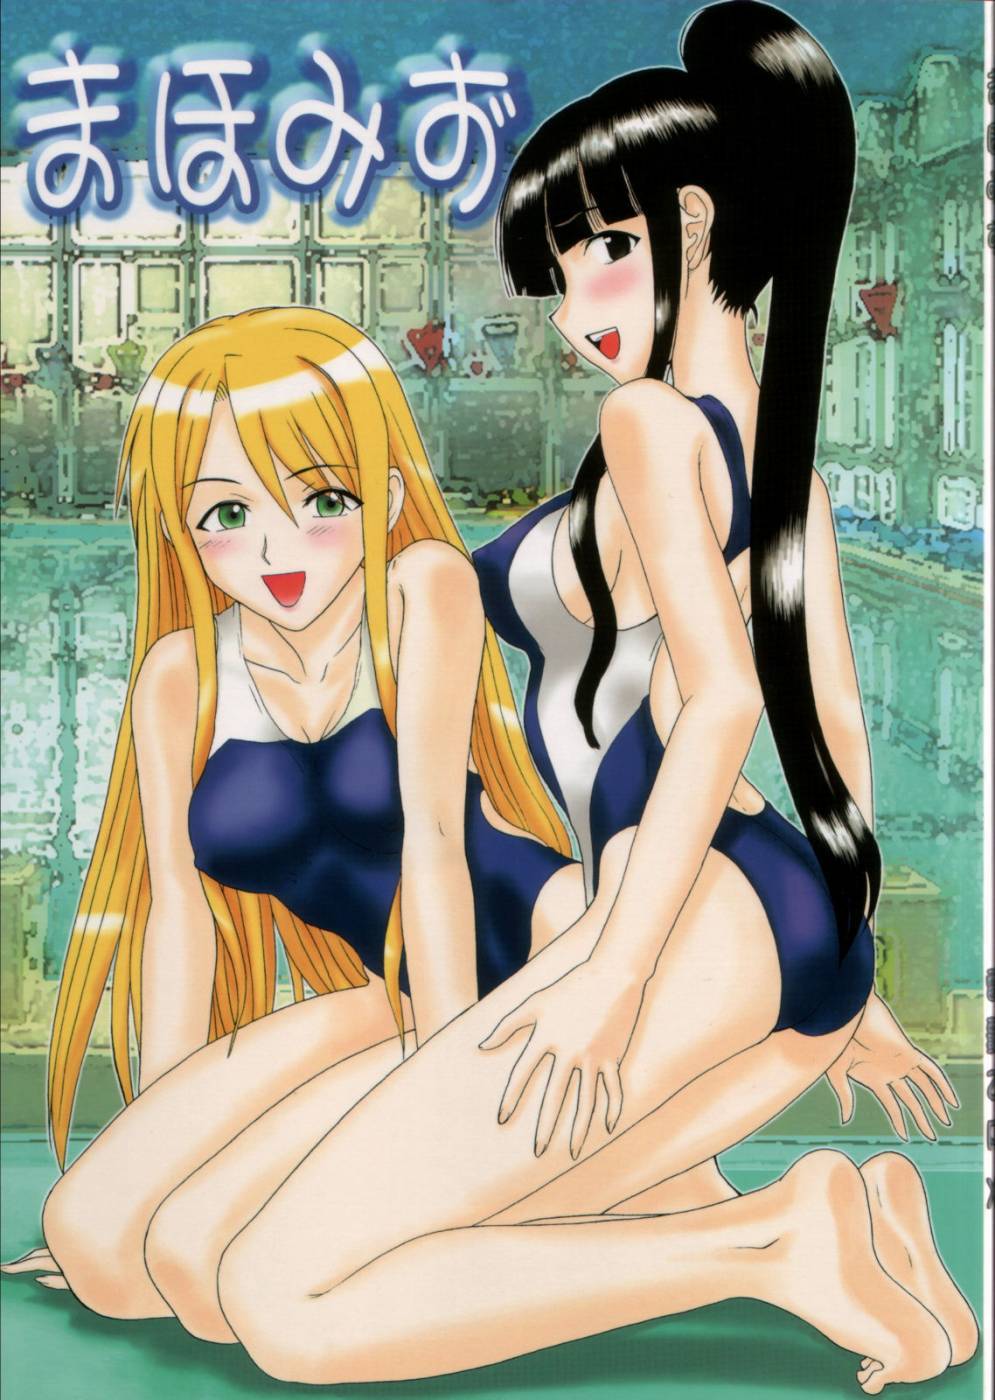 Mahomizu mahou sensei negima hentai manga